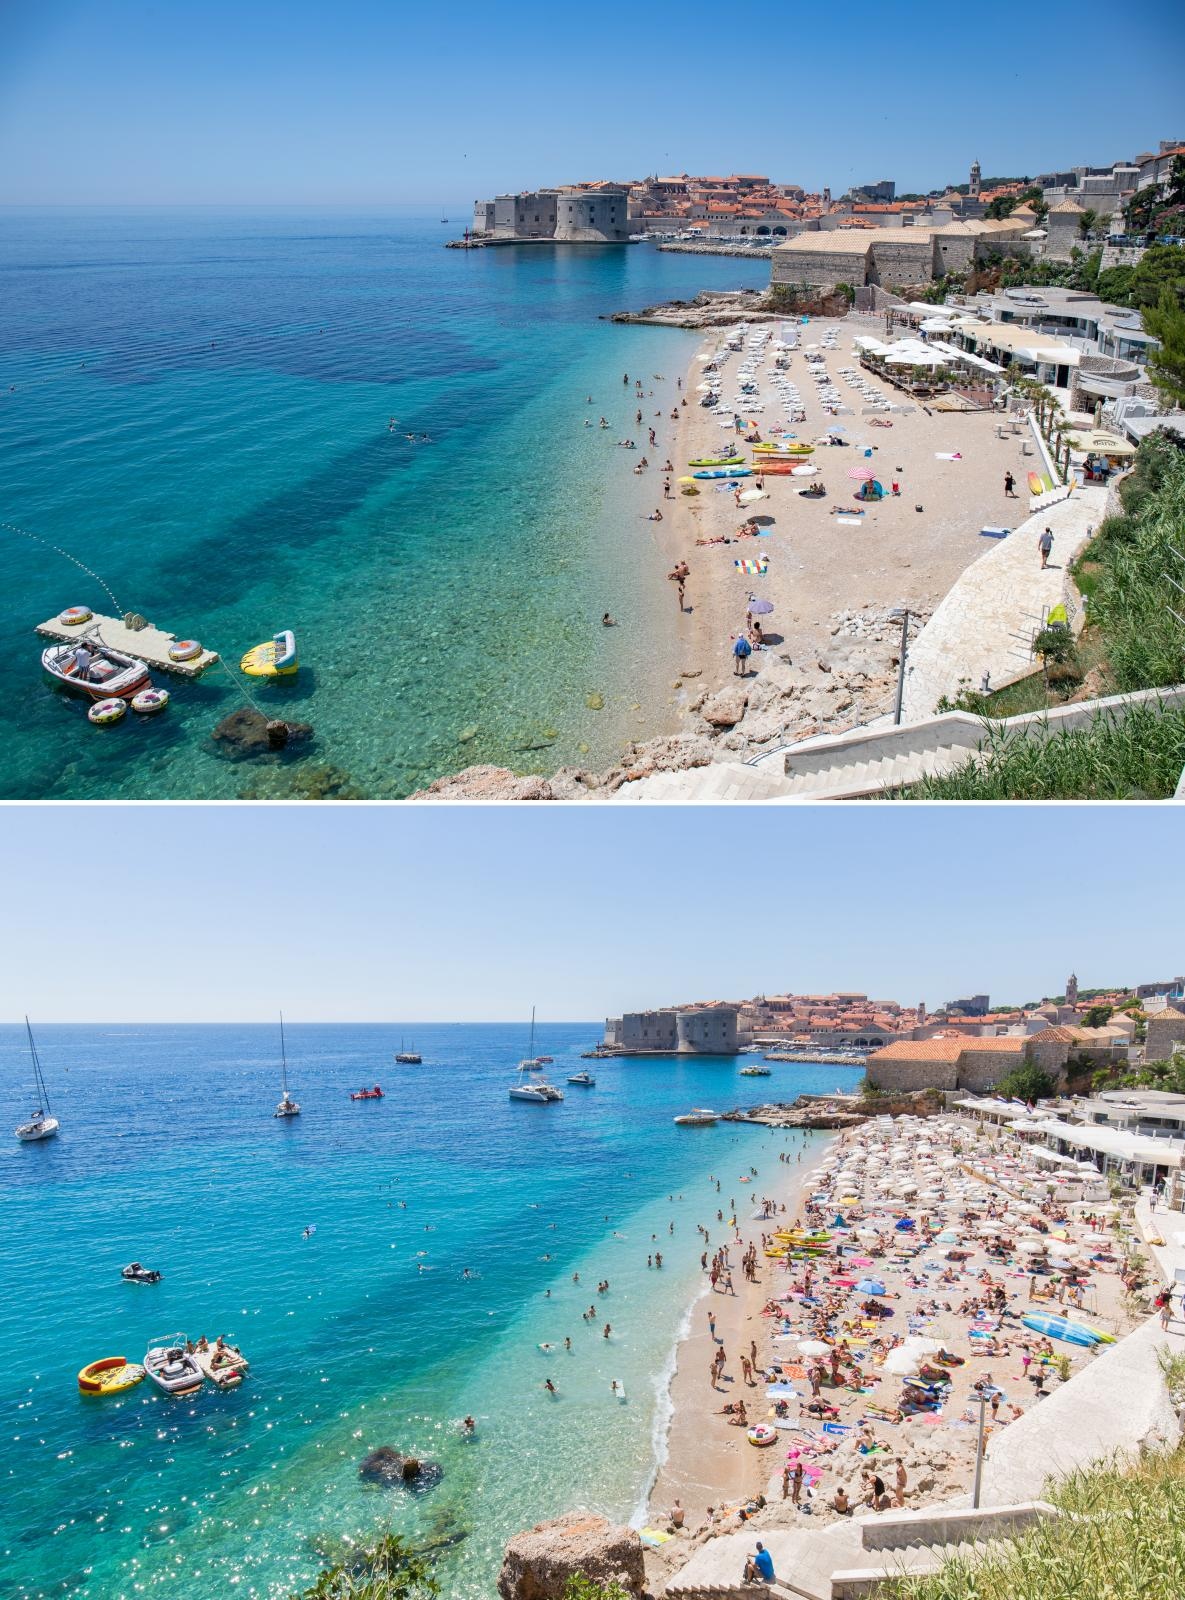 Pixsellovi fotografi ovih su dana prošetali nekolicinom popularnijih plaža u Hrvatskoj i snimili koliko na njima trenutno ima turista, u jeku epidemije korone. Kako bi vizualno demonstrirali koliko je ova turistička sezona slaba, iskopali su fotografije s tih istih plaža, ali snimljenih proteklih godina. Usporedba je krajnje dramatična. Ovo je, primjerice, plaža u Dubrovniku.